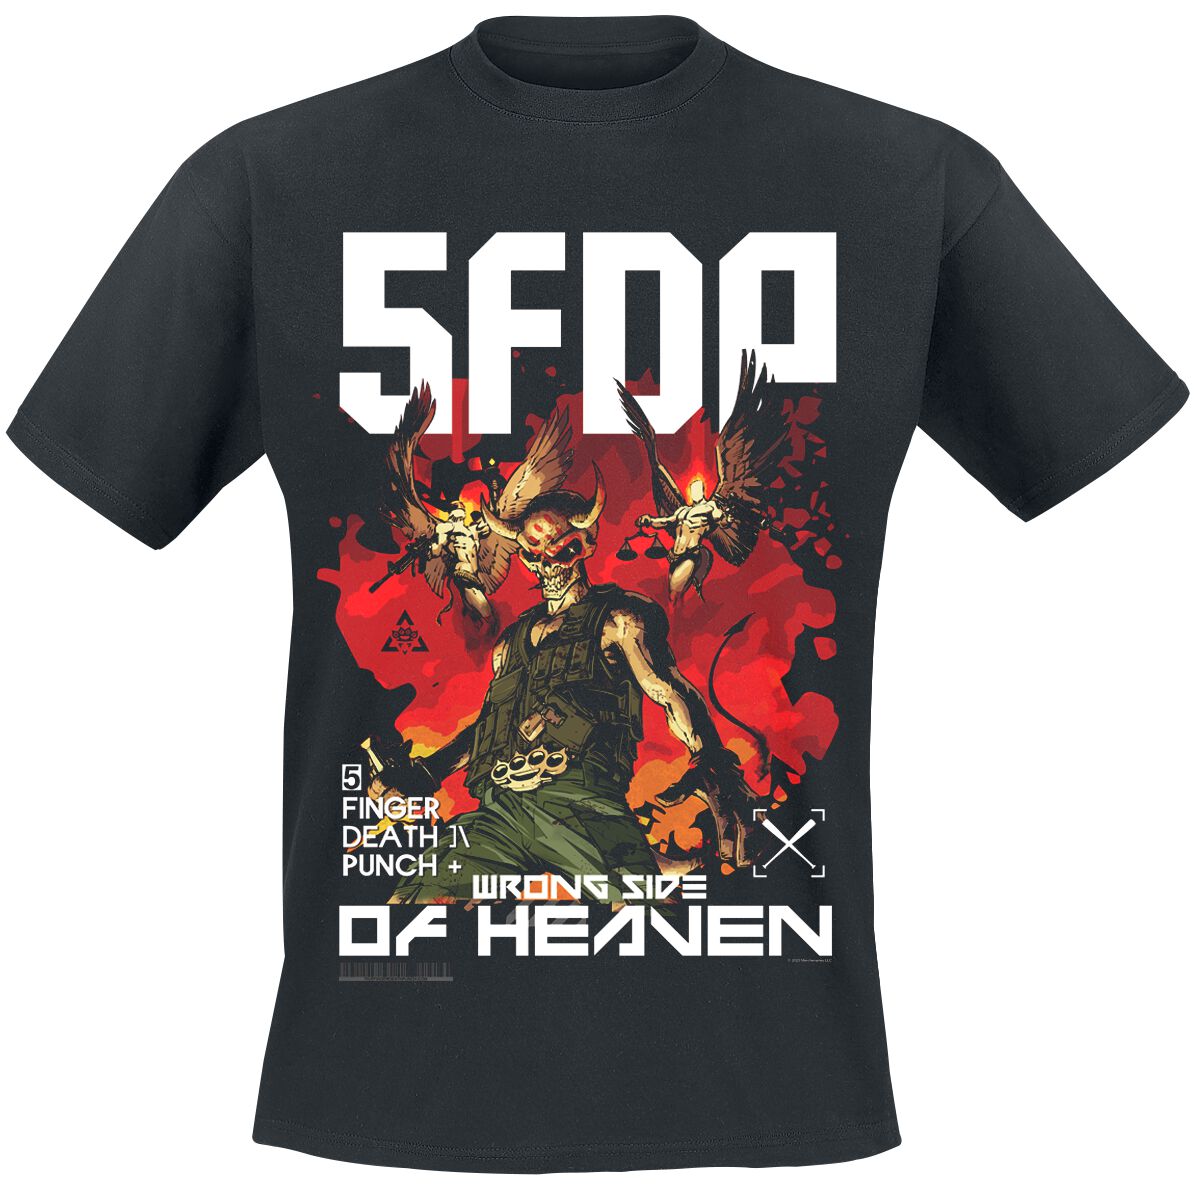 Five Finger Death Punch T-Shirt - Anniversary Wrong Side Of Heaven - S bis 3XL - für Männer - Größe 3XL - schwarz  - Lizenziertes Merchandise!